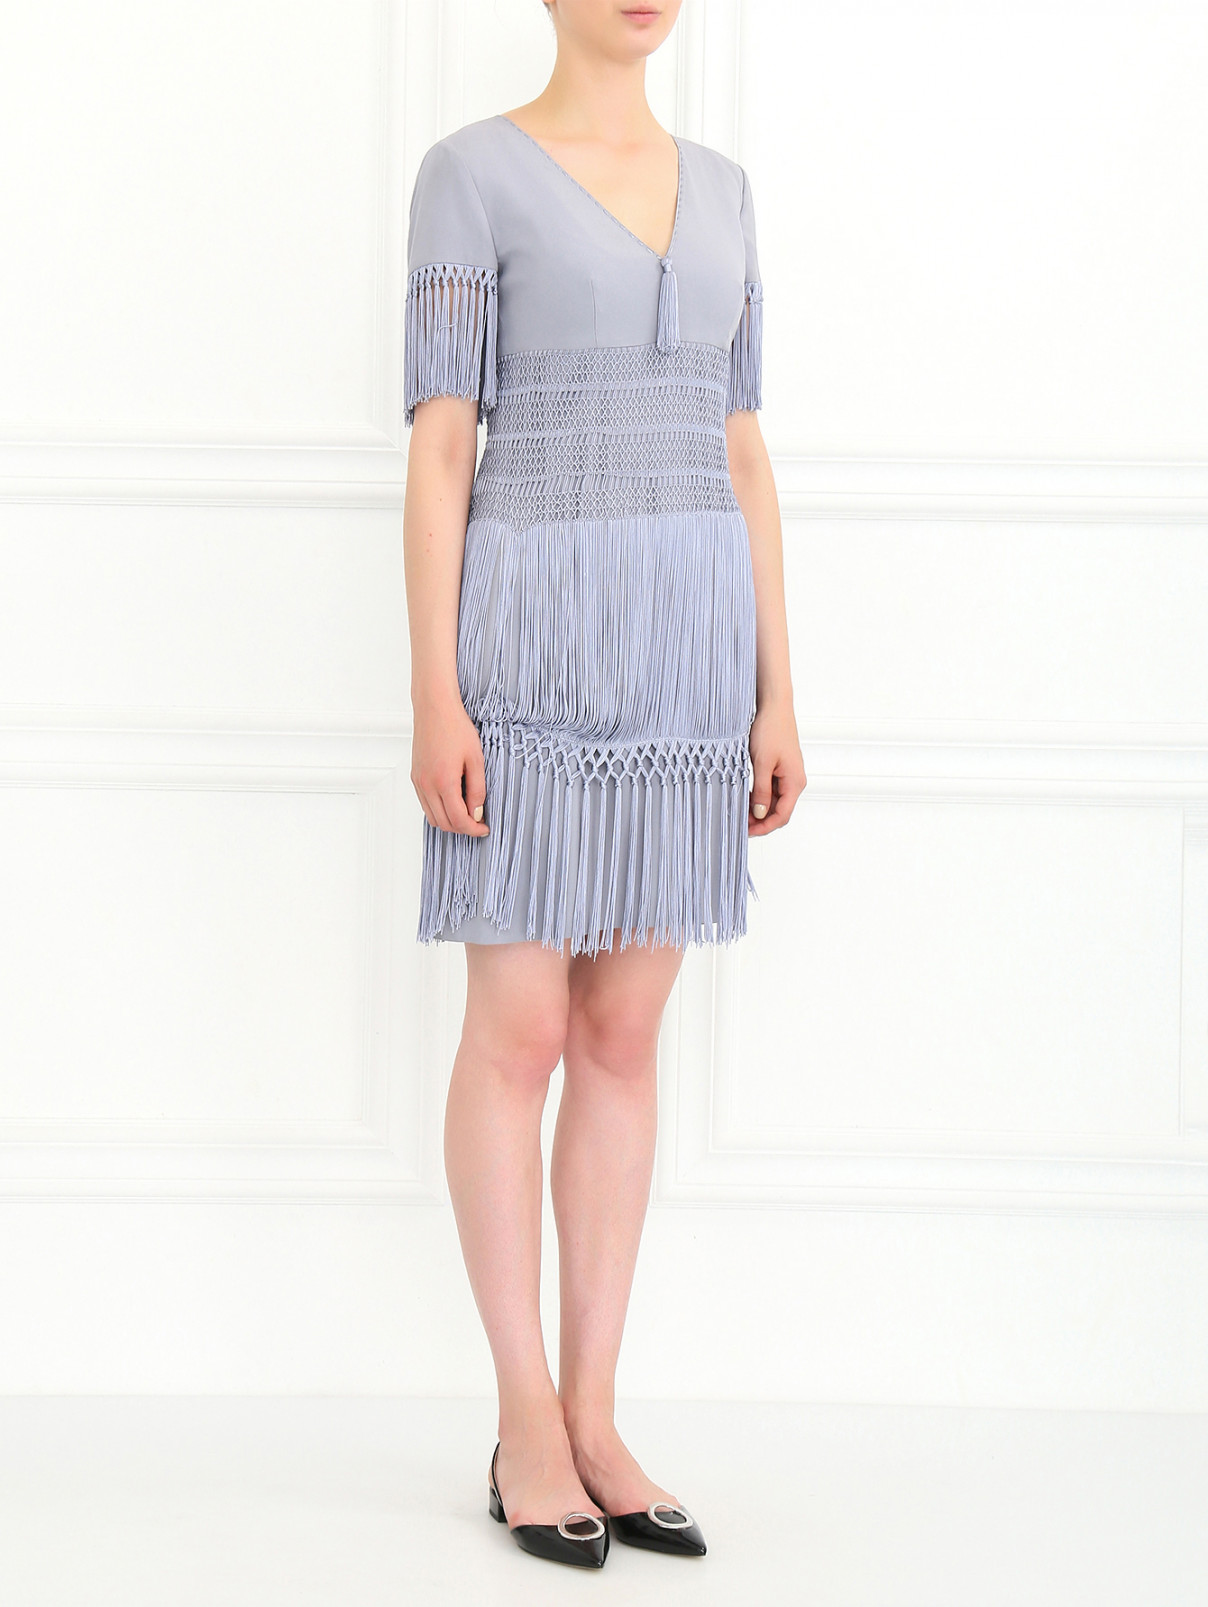 Платье с декоративной бахромой Moschino  –  Модель Общий вид  – Цвет:  Серый